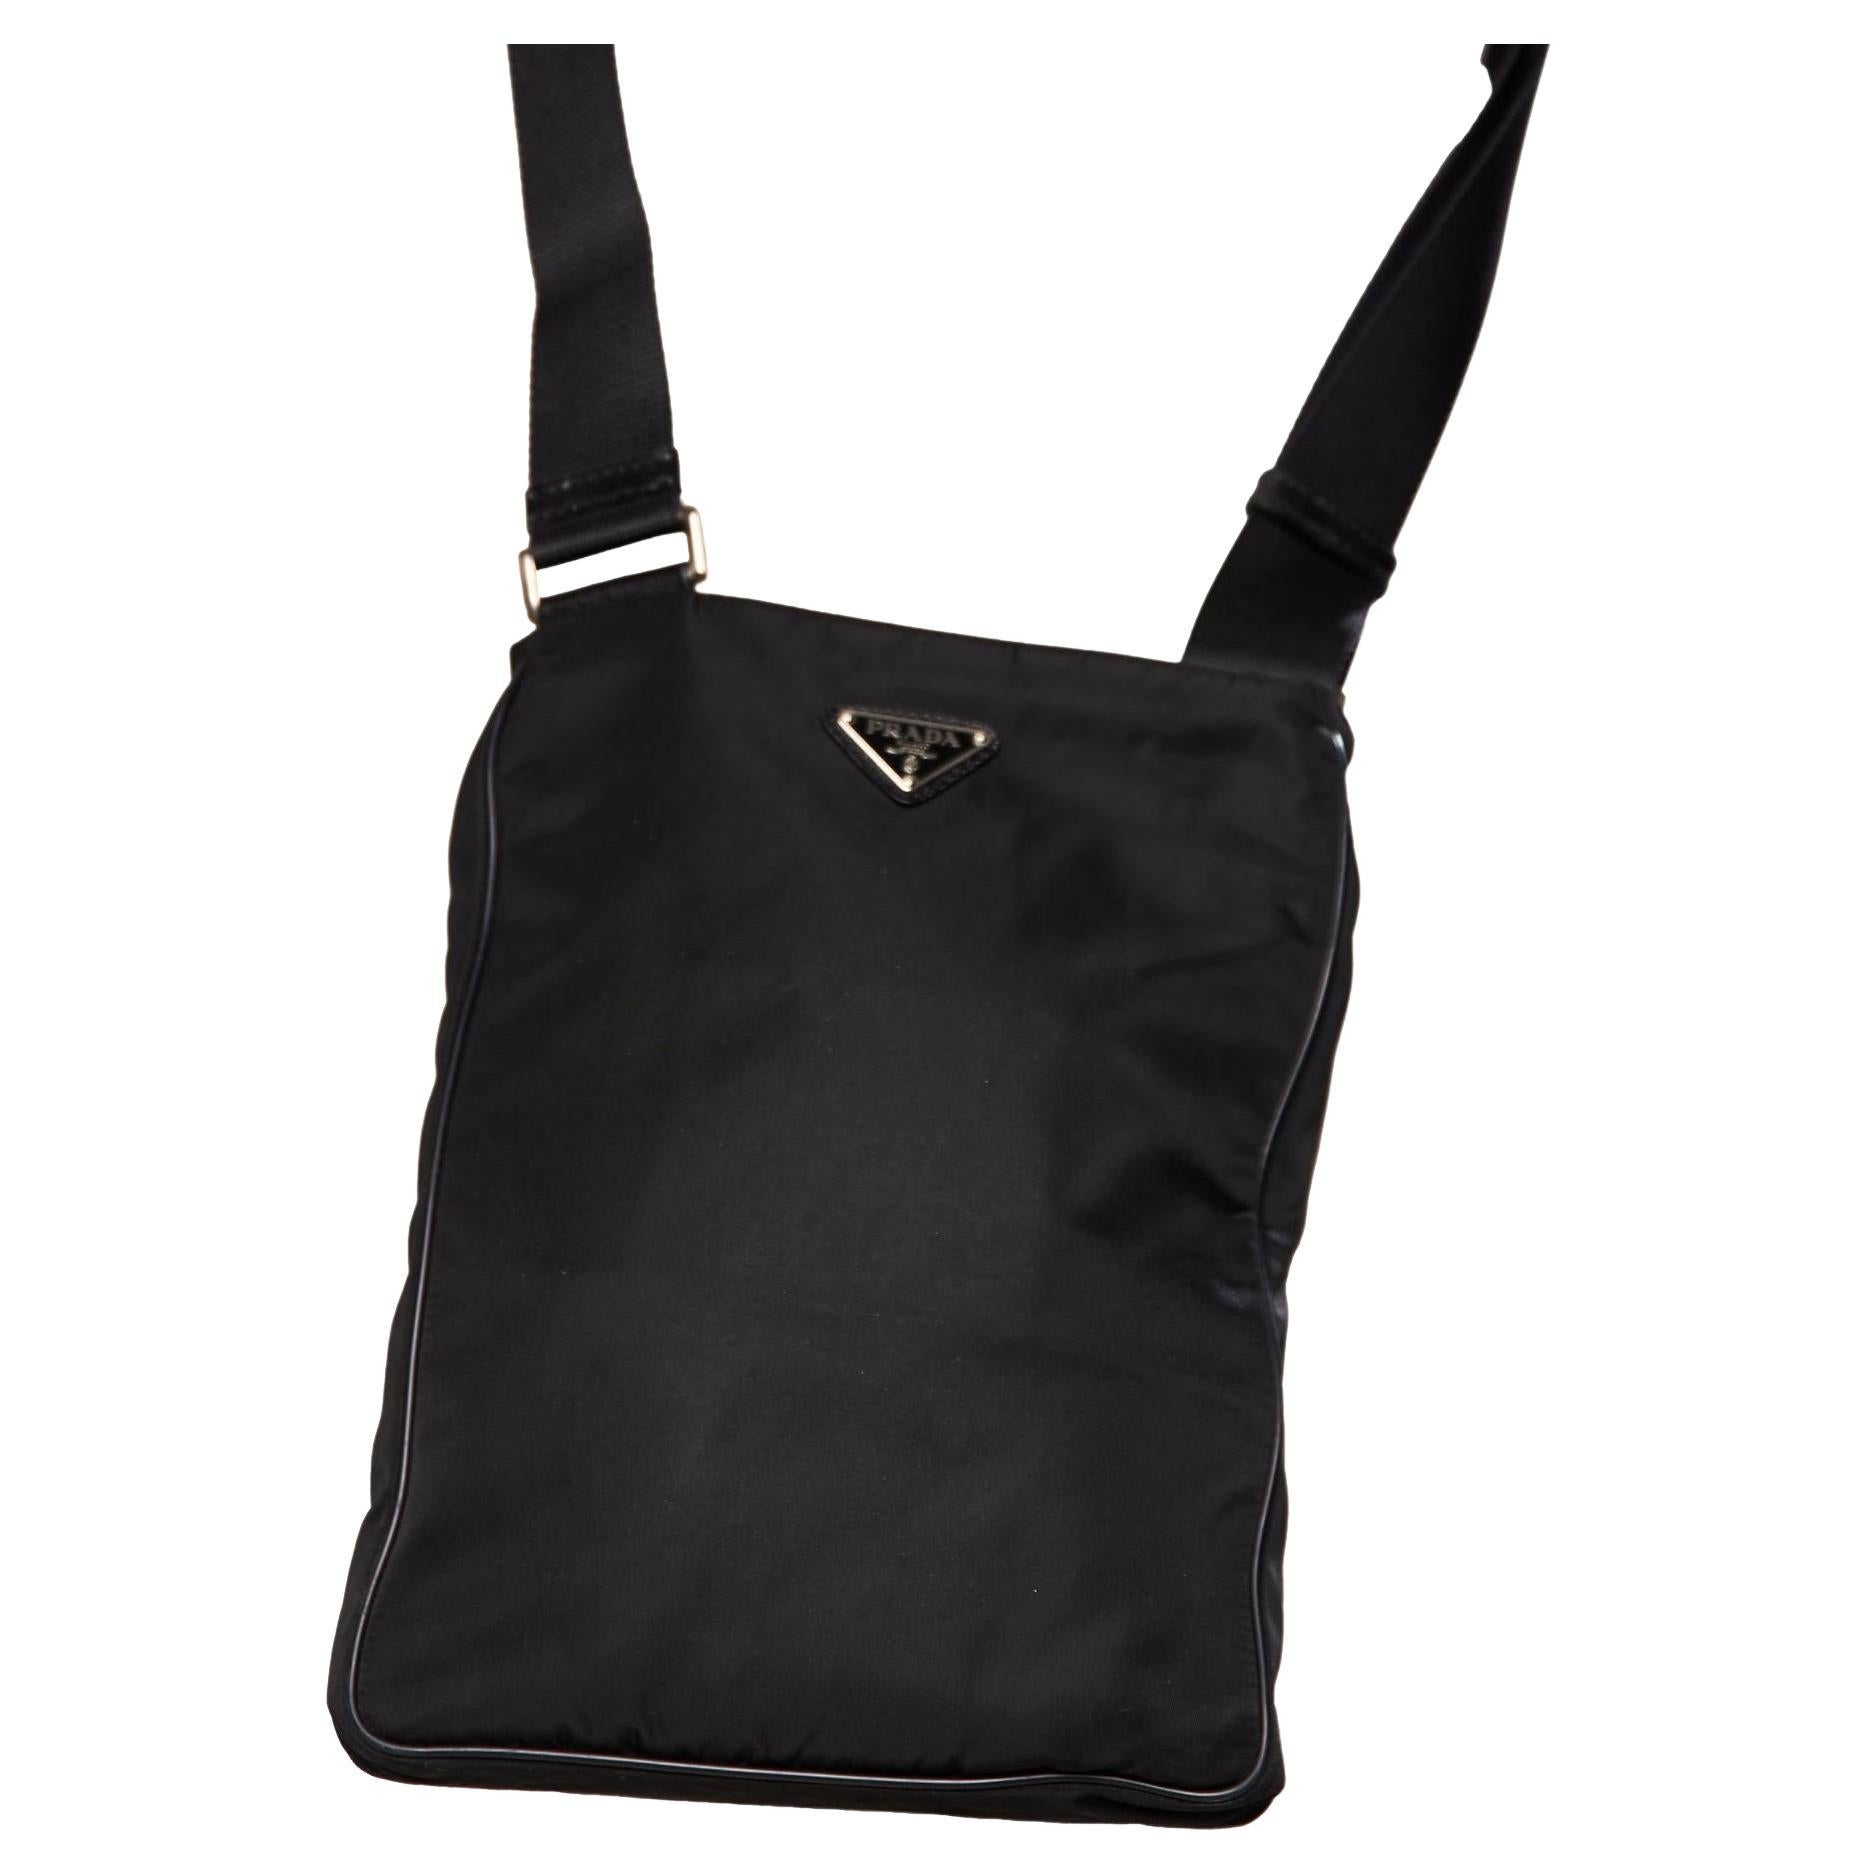 Prada, vintage Vela nylon black tote with leather str… - Gem